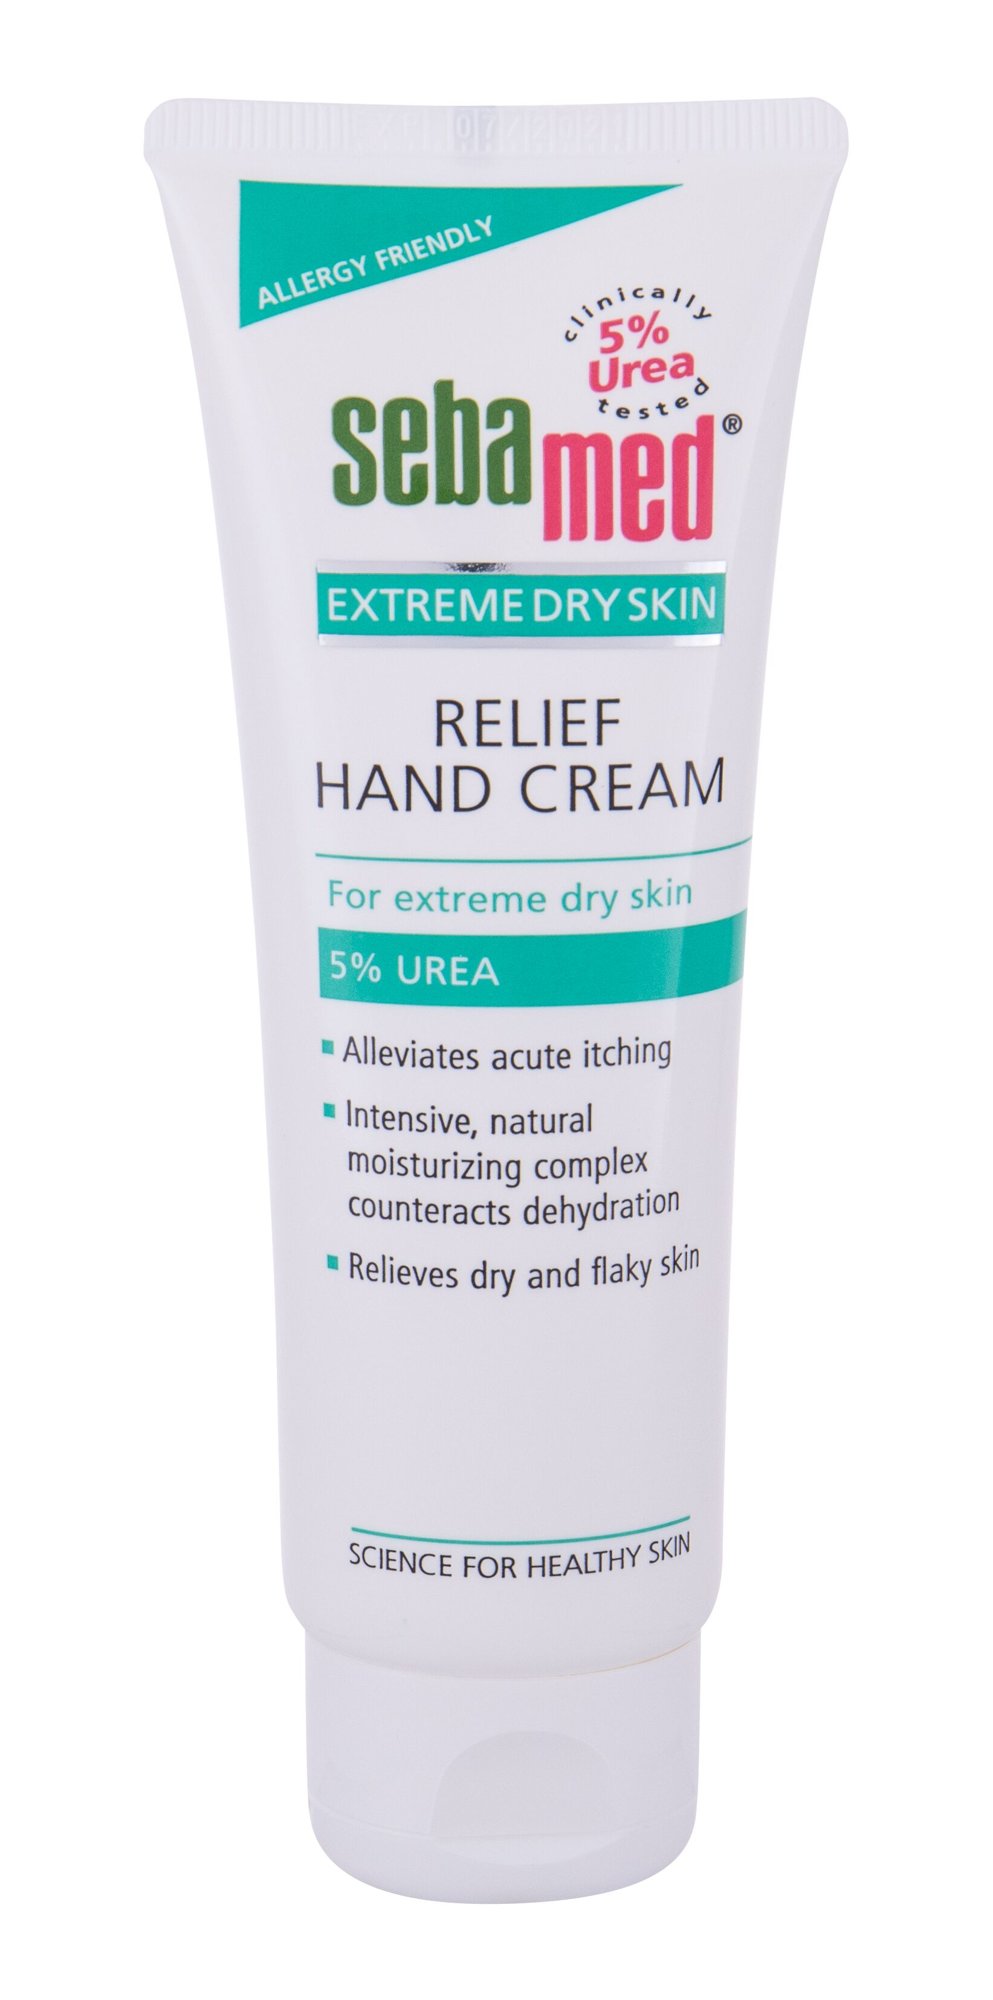 SebaMed Extreme Dry Skin Relief Hand Cream 5% Urea rankų kremas